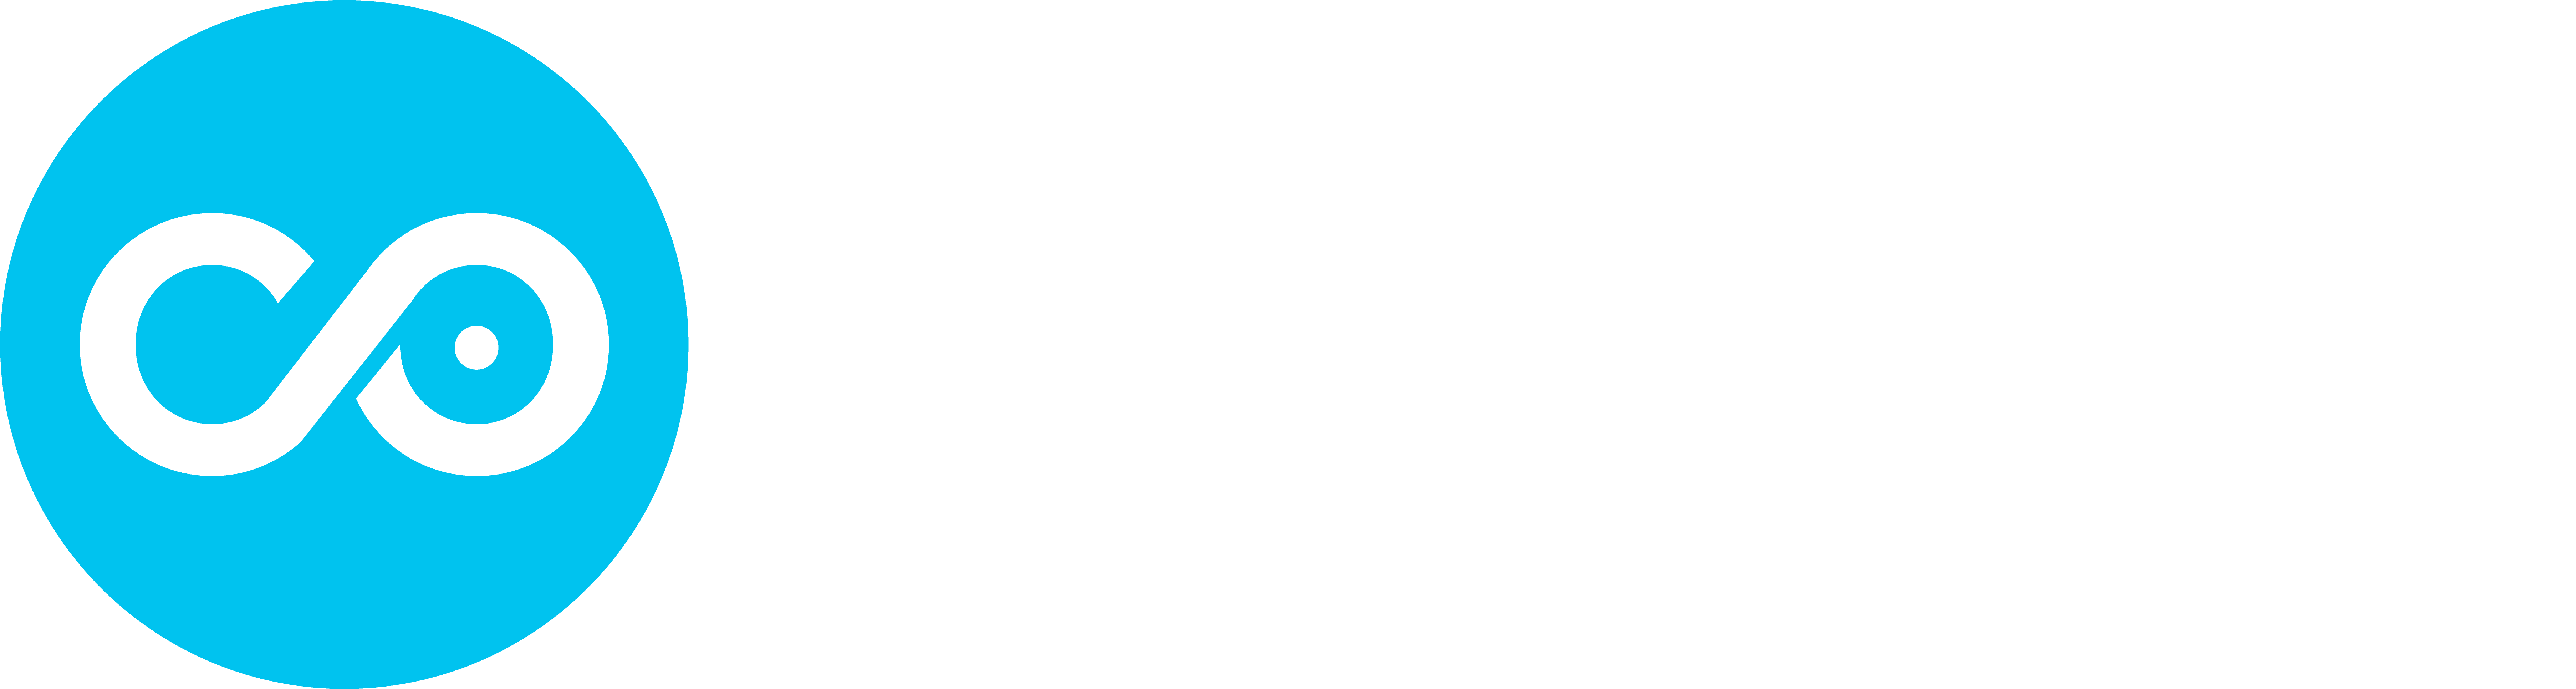 Copado-Logo_Blue_White